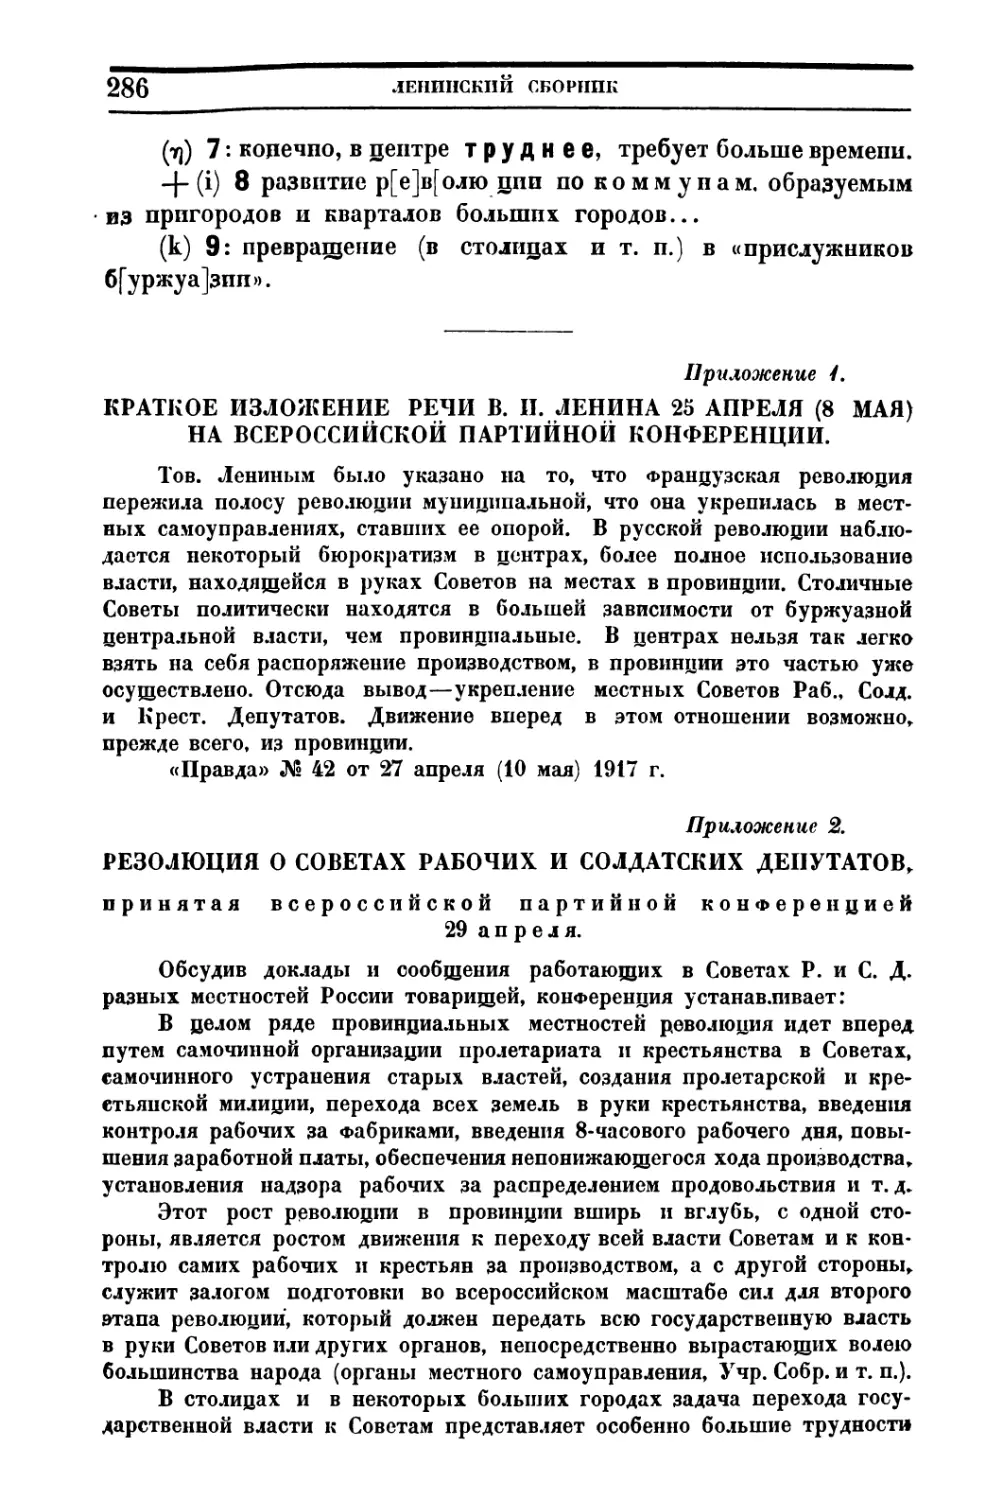 Приложение 2. Резолюция о Советах Рабочих и Солдатских Депутатов, принятая Всероссийской Партийной Конференцией 29 апреля